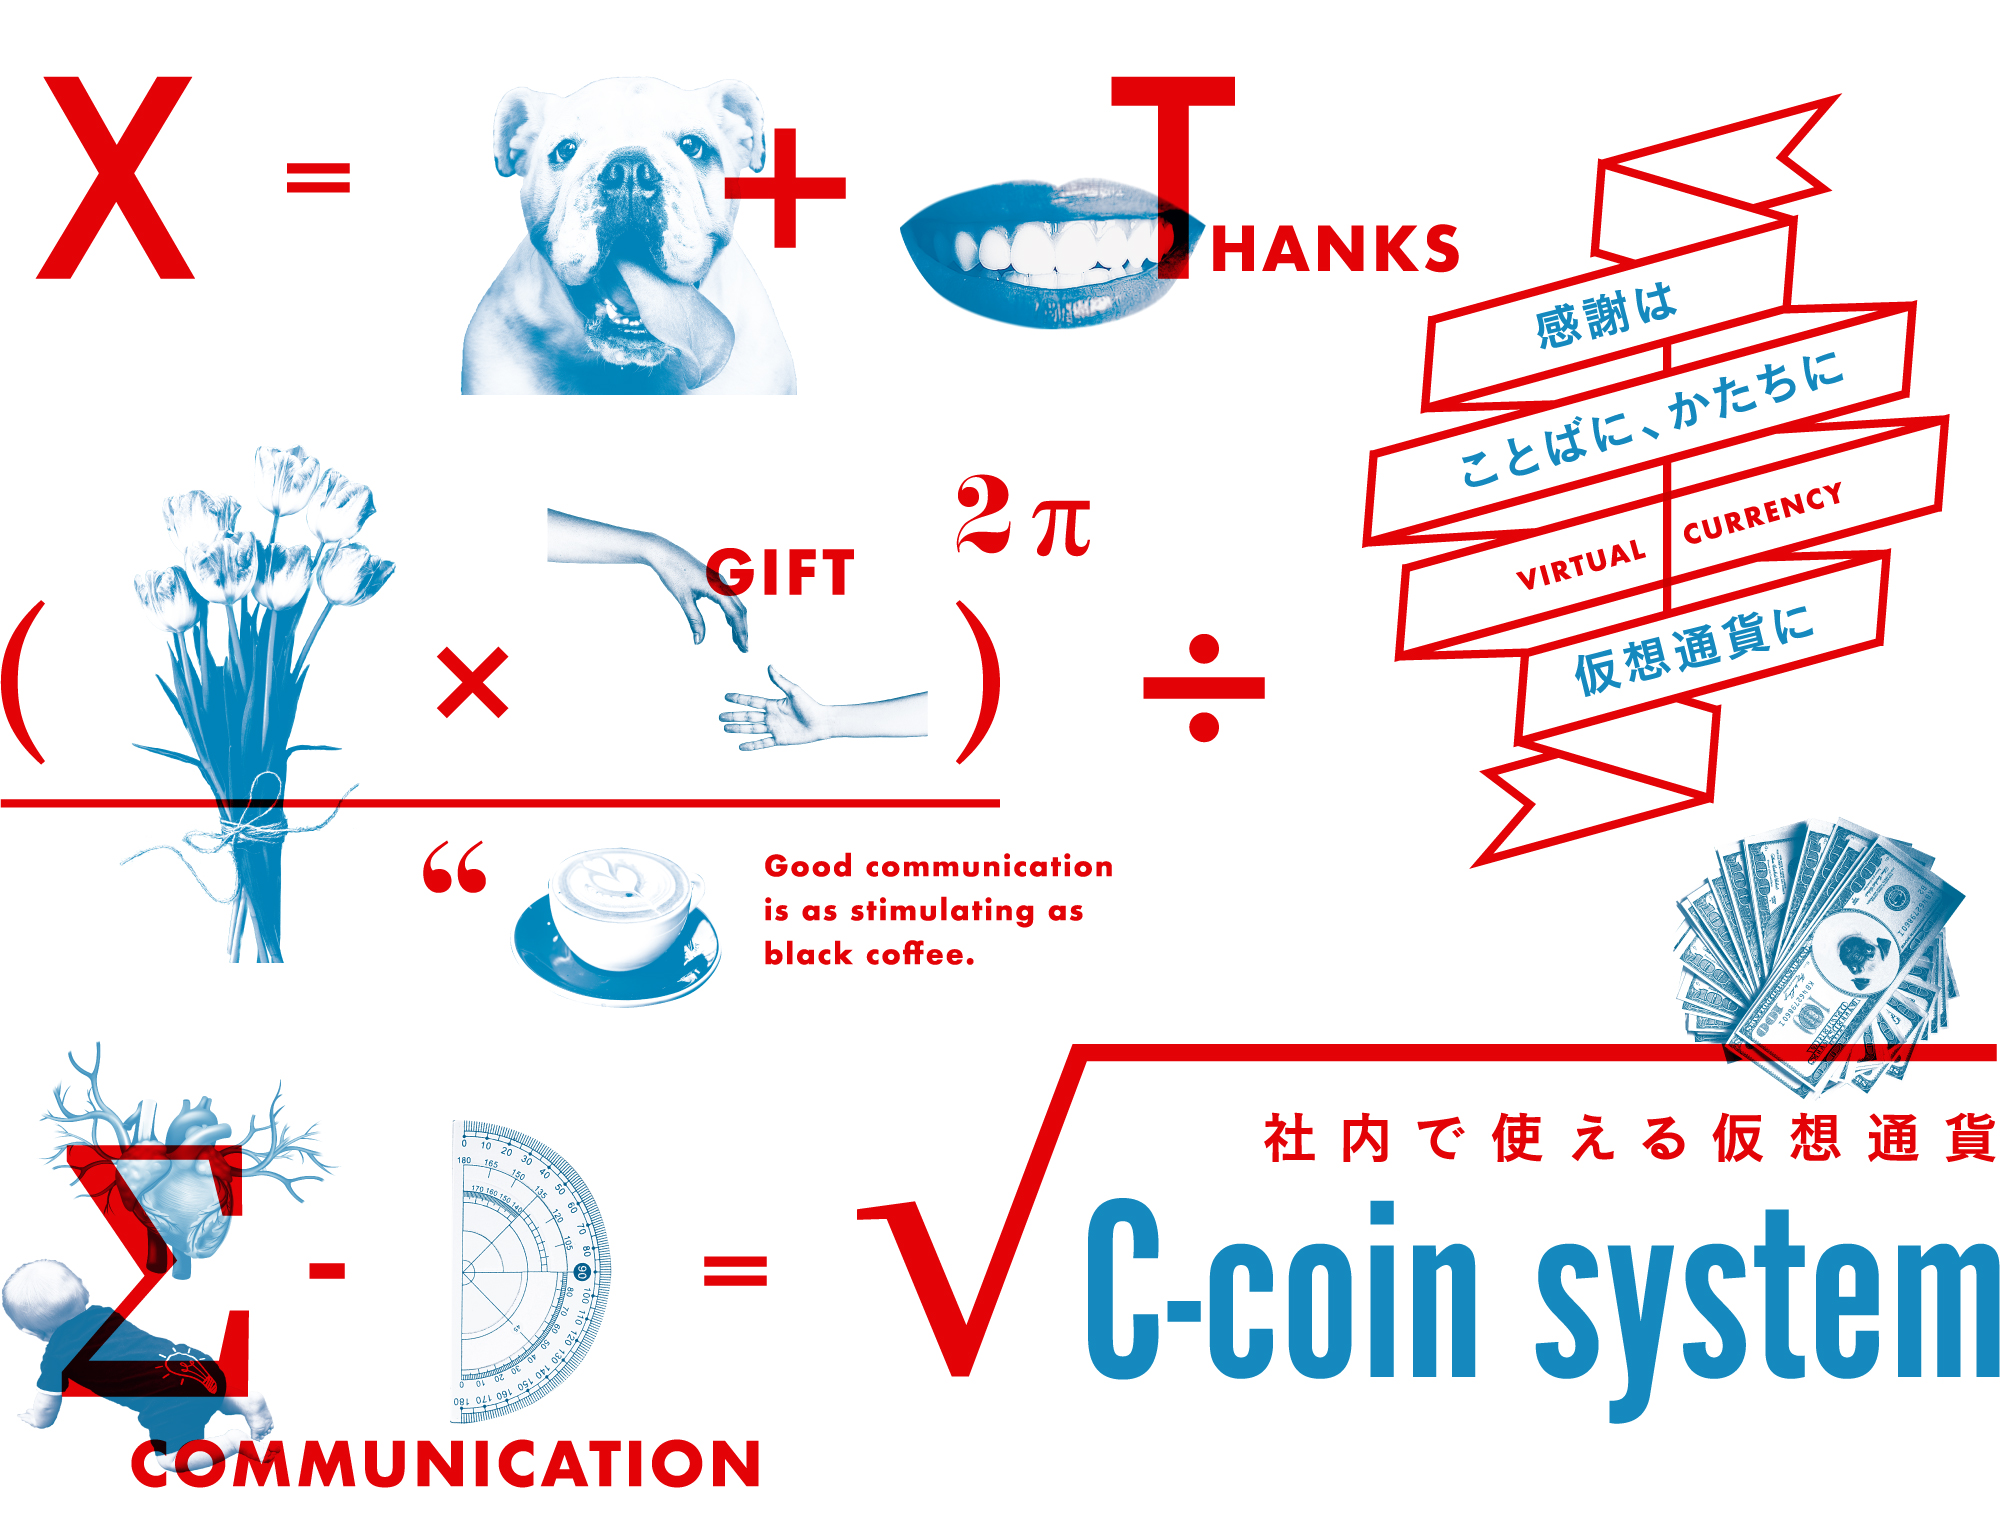 社内で使える仮想通貨 C-coin system